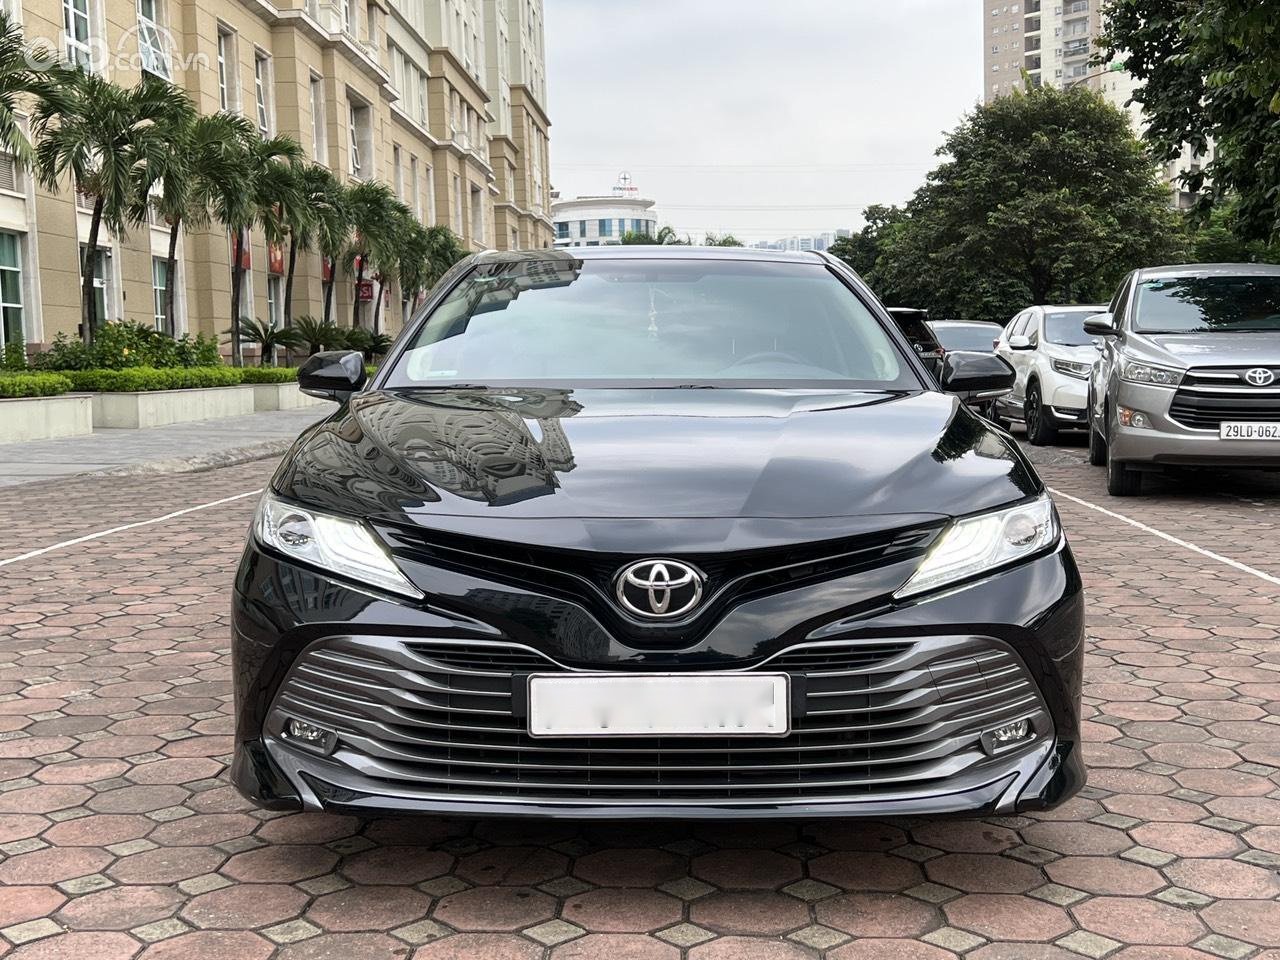 Toyota Camry 2019 hoàn toàn mới ra mắt thay diện mạo giá xe từ 1020